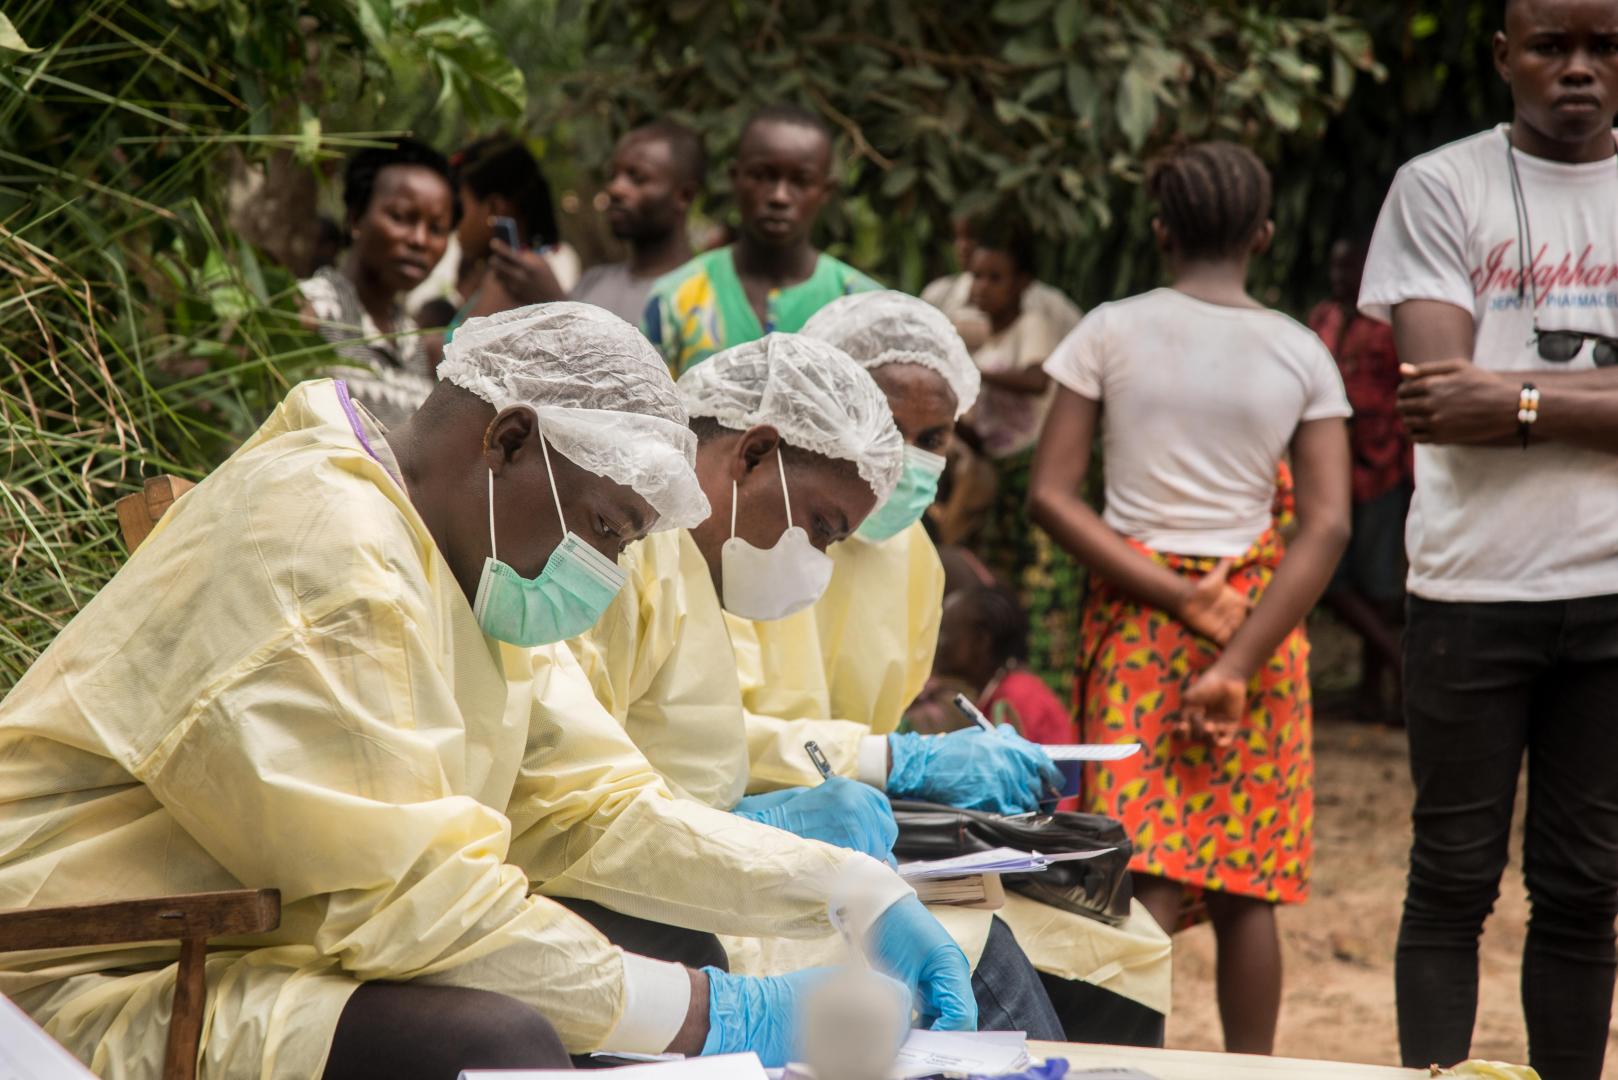 Tıp çalışanları, doğrulanmış bir Ebola vakasının keşfedilmesinden sonra, Kongo Demokratik Cumhuriyeti, Ekvator Eyaleti, Moto, Bikoro'da bir evi hazırlıyor ve dezenfekte ediyorlardı.